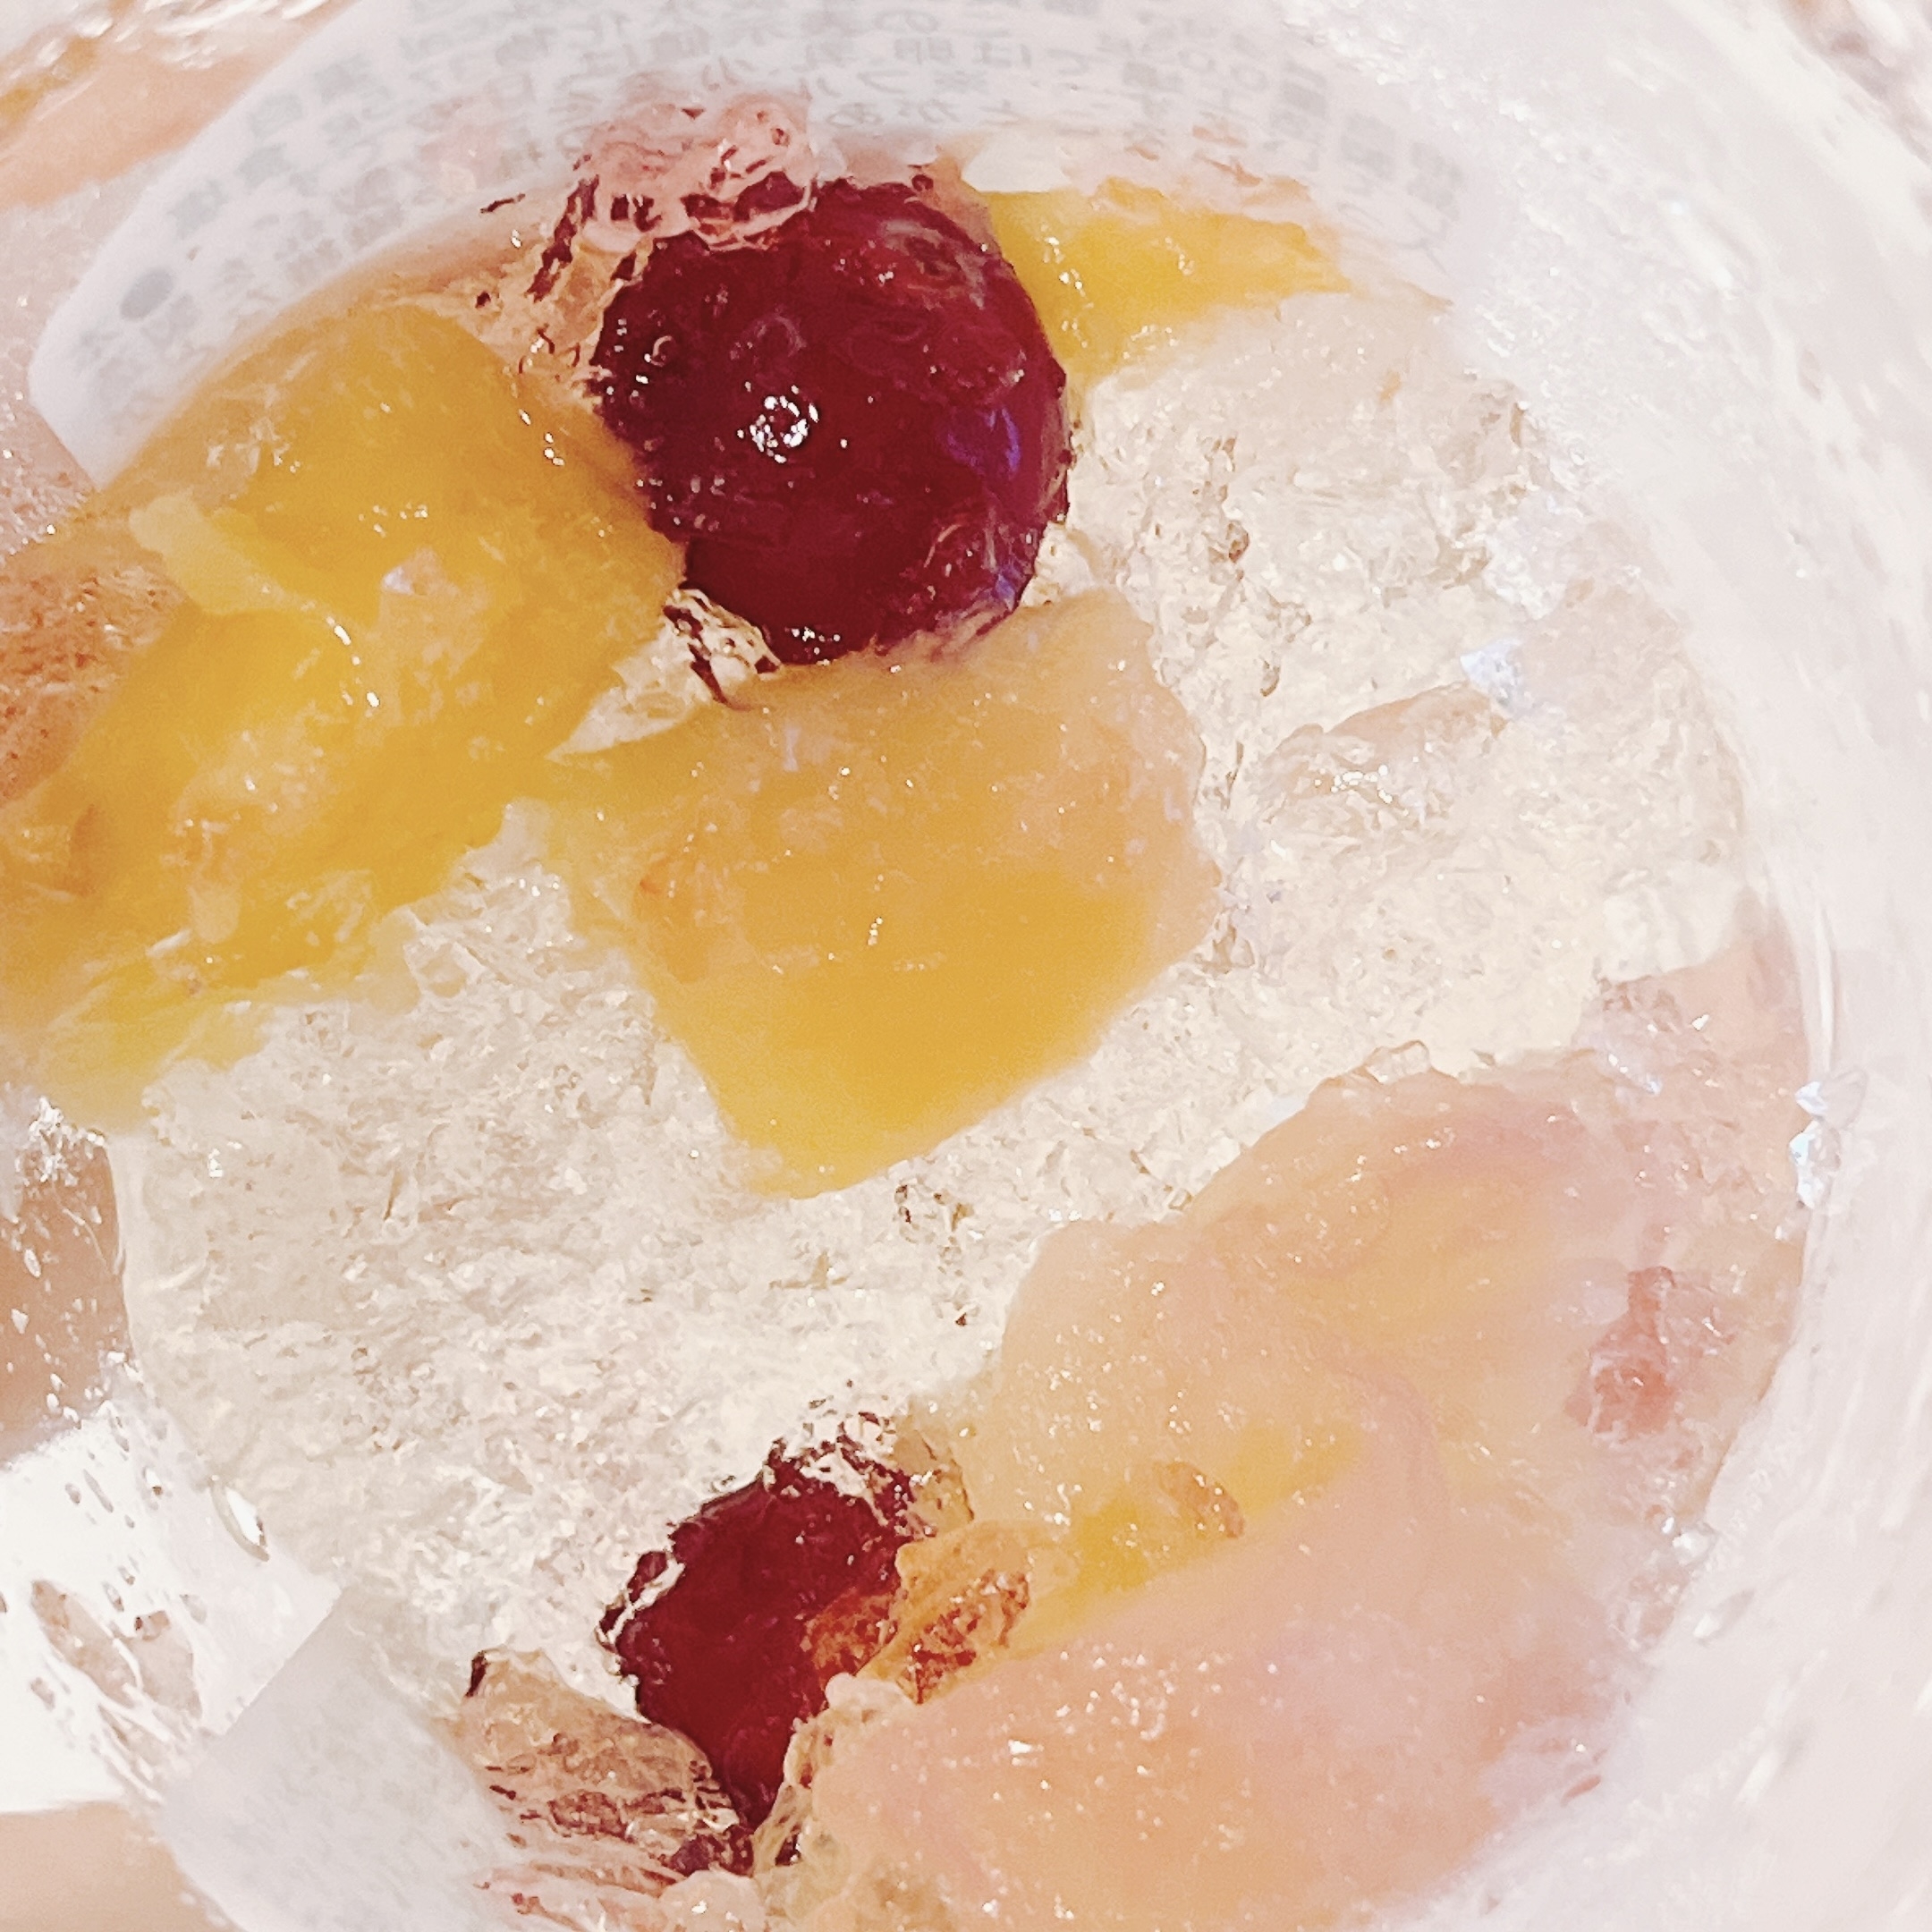 成城石井のおすすめスイーツ「彩り果実のハイビスカスティーゼリー」